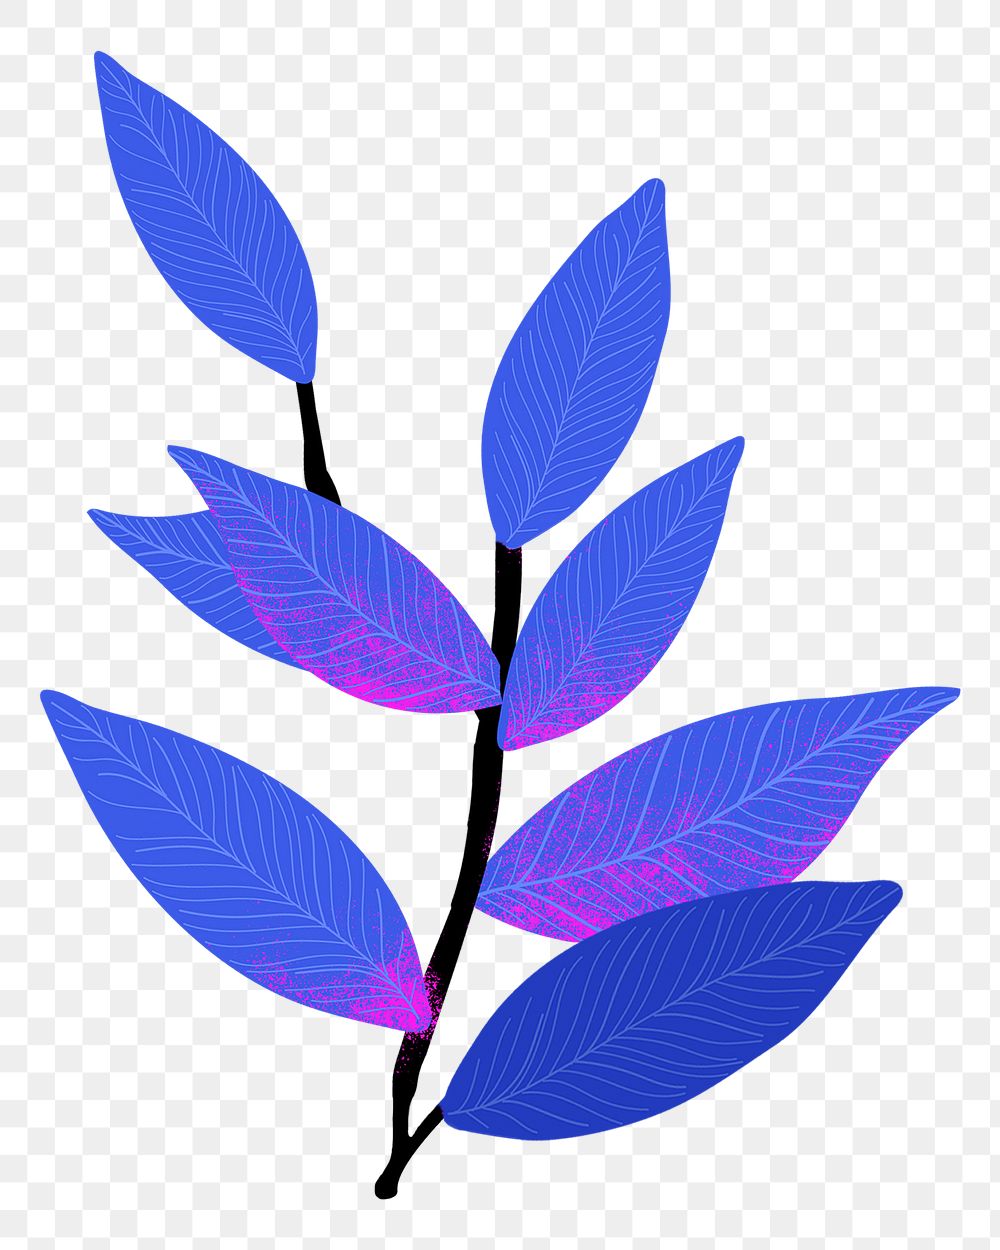 Blue leaf  png sticker, transparent background